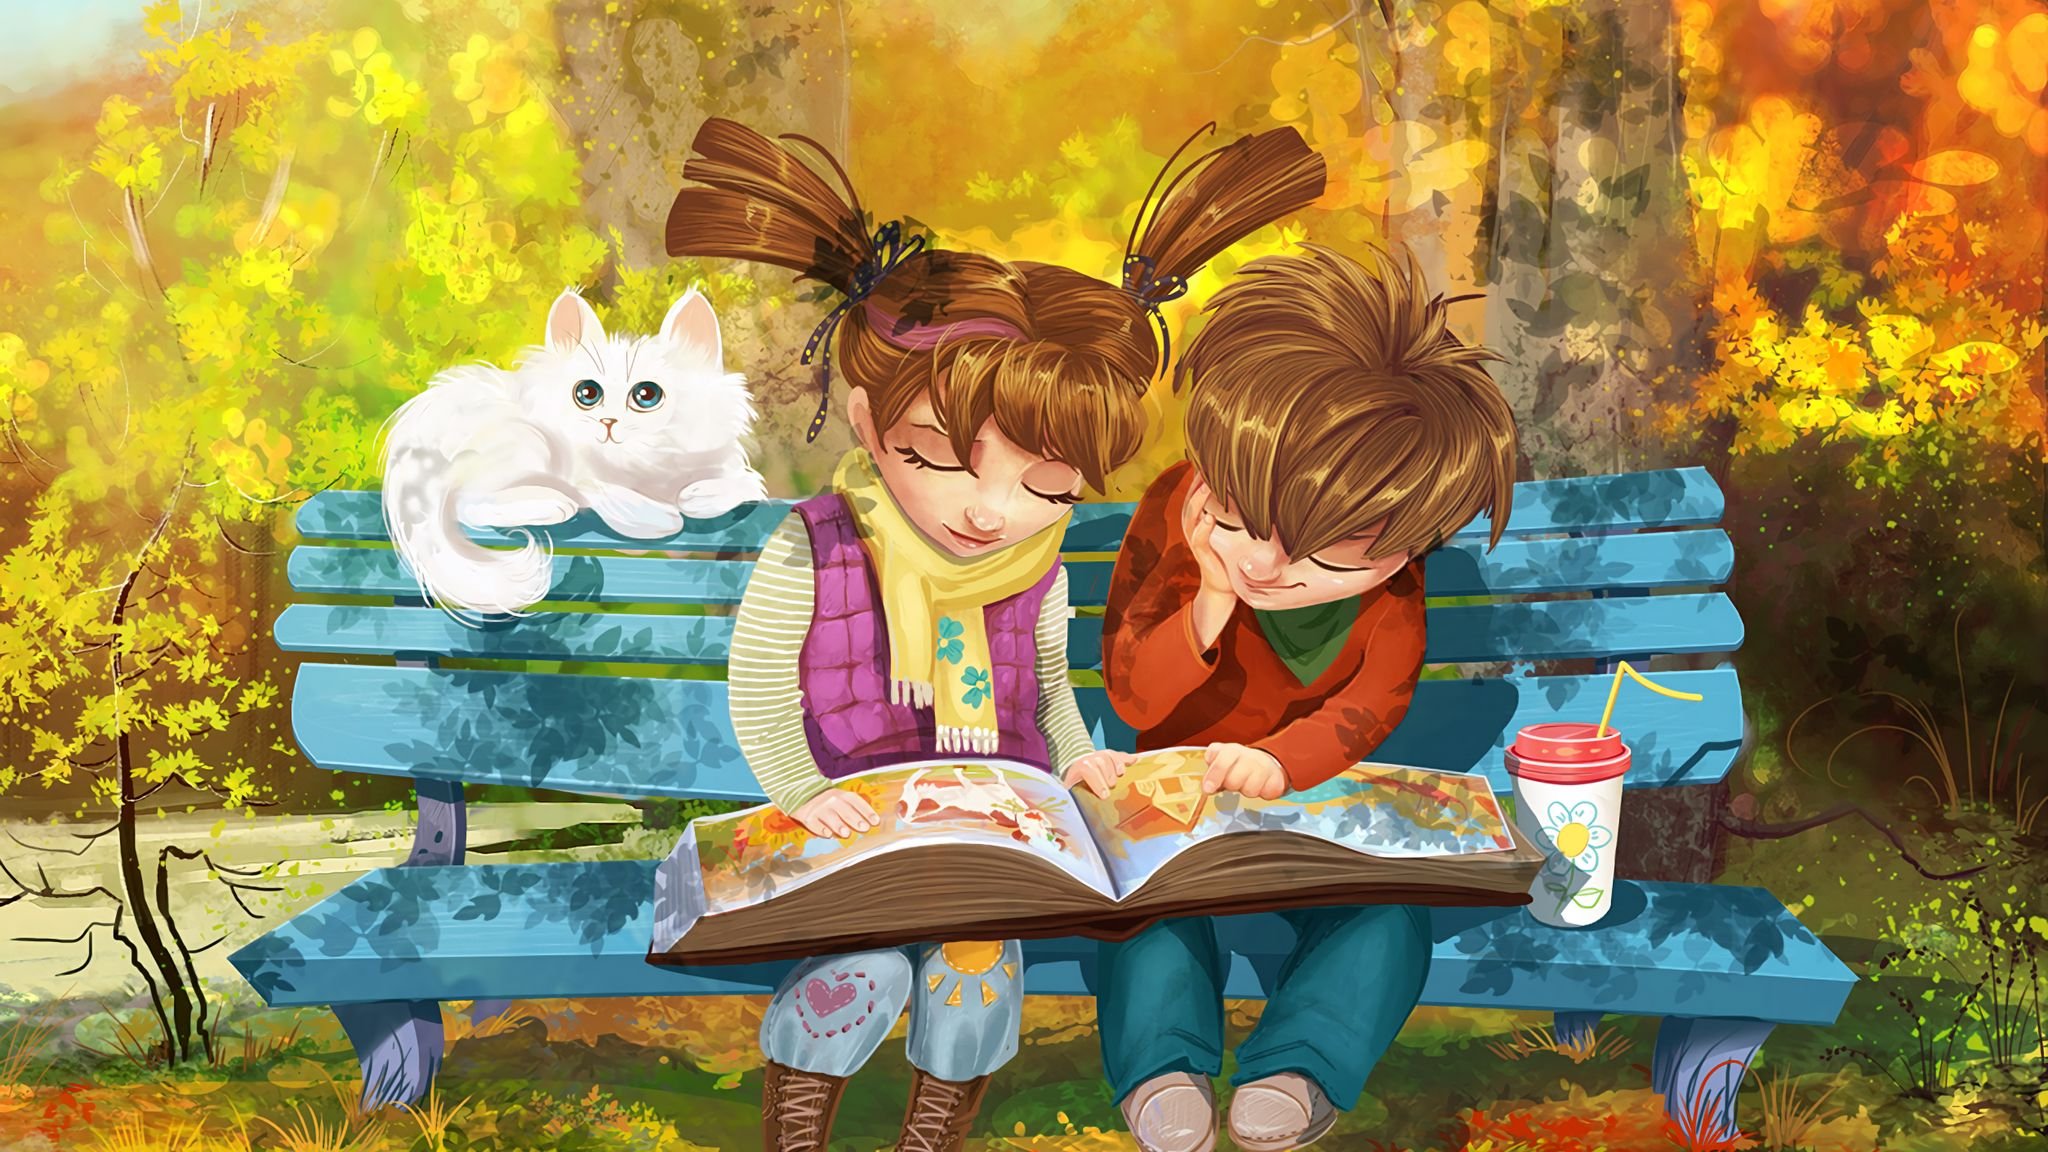 Читаем сказку вместе. Пойман за чтением. Лето с книжкой на скамейке. Иллюстрации к книгам. Мальчик и девочка на скамейке.